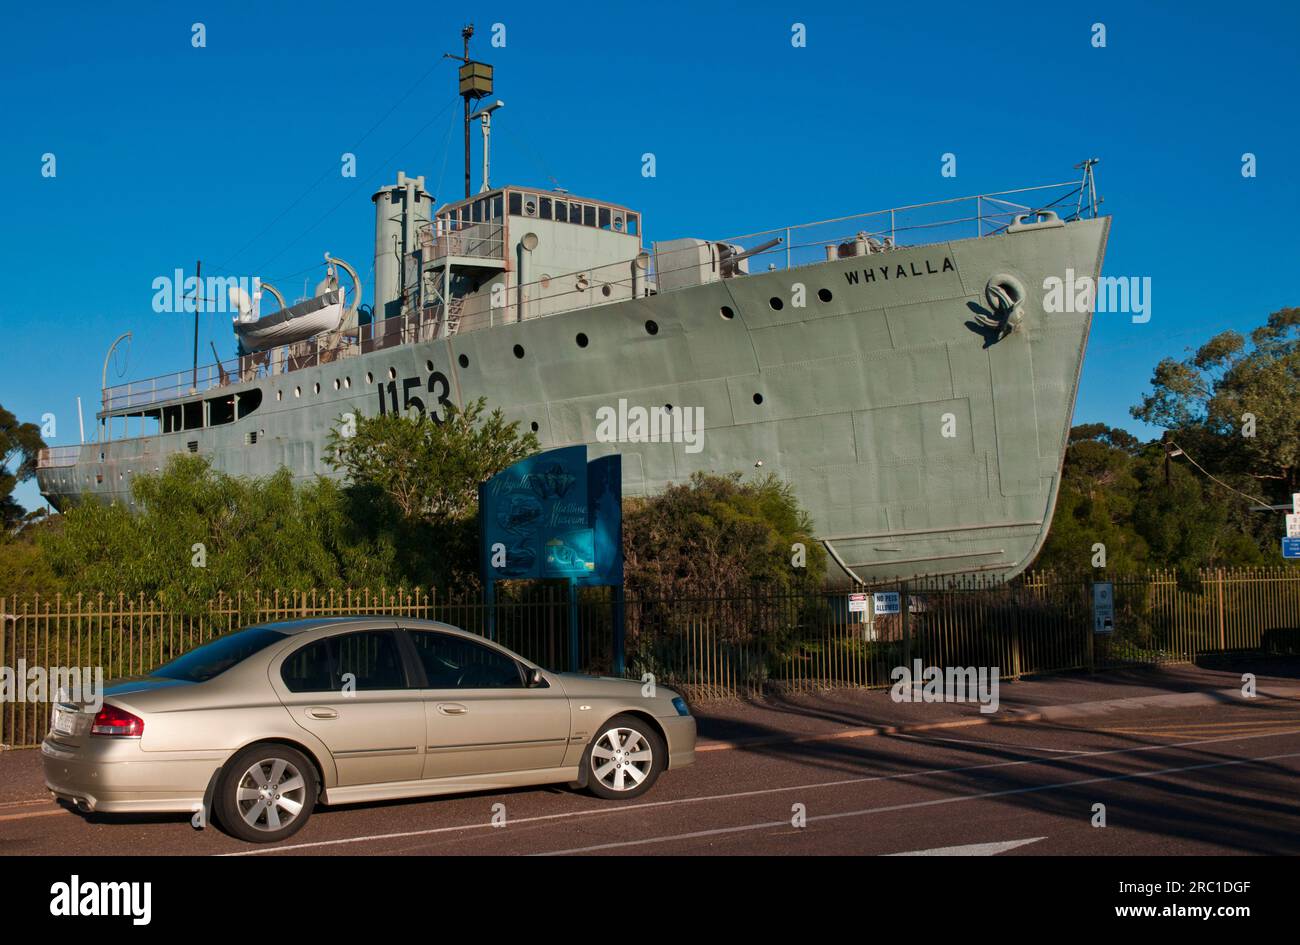 Le navire désaffecté, le dragueur de mines, HMAS Whyalla, est placé comme pièce maîtresse du musée maritime de Whyalla dans la ville d'après laquelle il a été nommé, Whyalla, Australie du Sud Banque D'Images